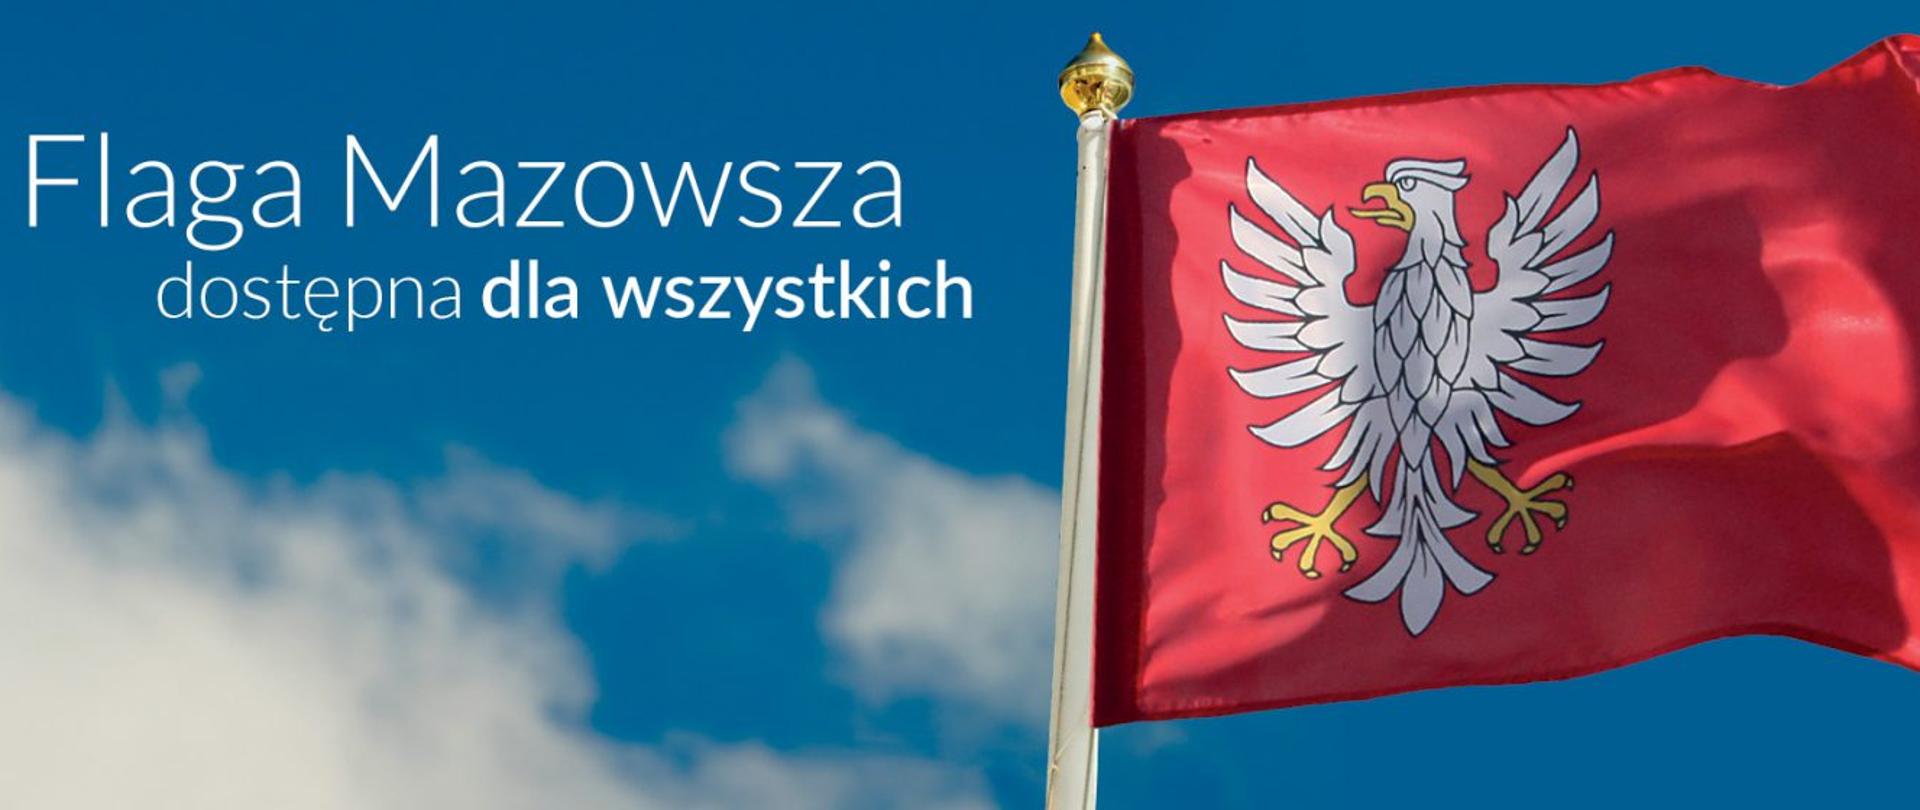 Czerwona flaga z białym orłem na tle błękitnego nieba i białych chmur z napisem: Flaga Mazowsza dostępna dla wszystkich